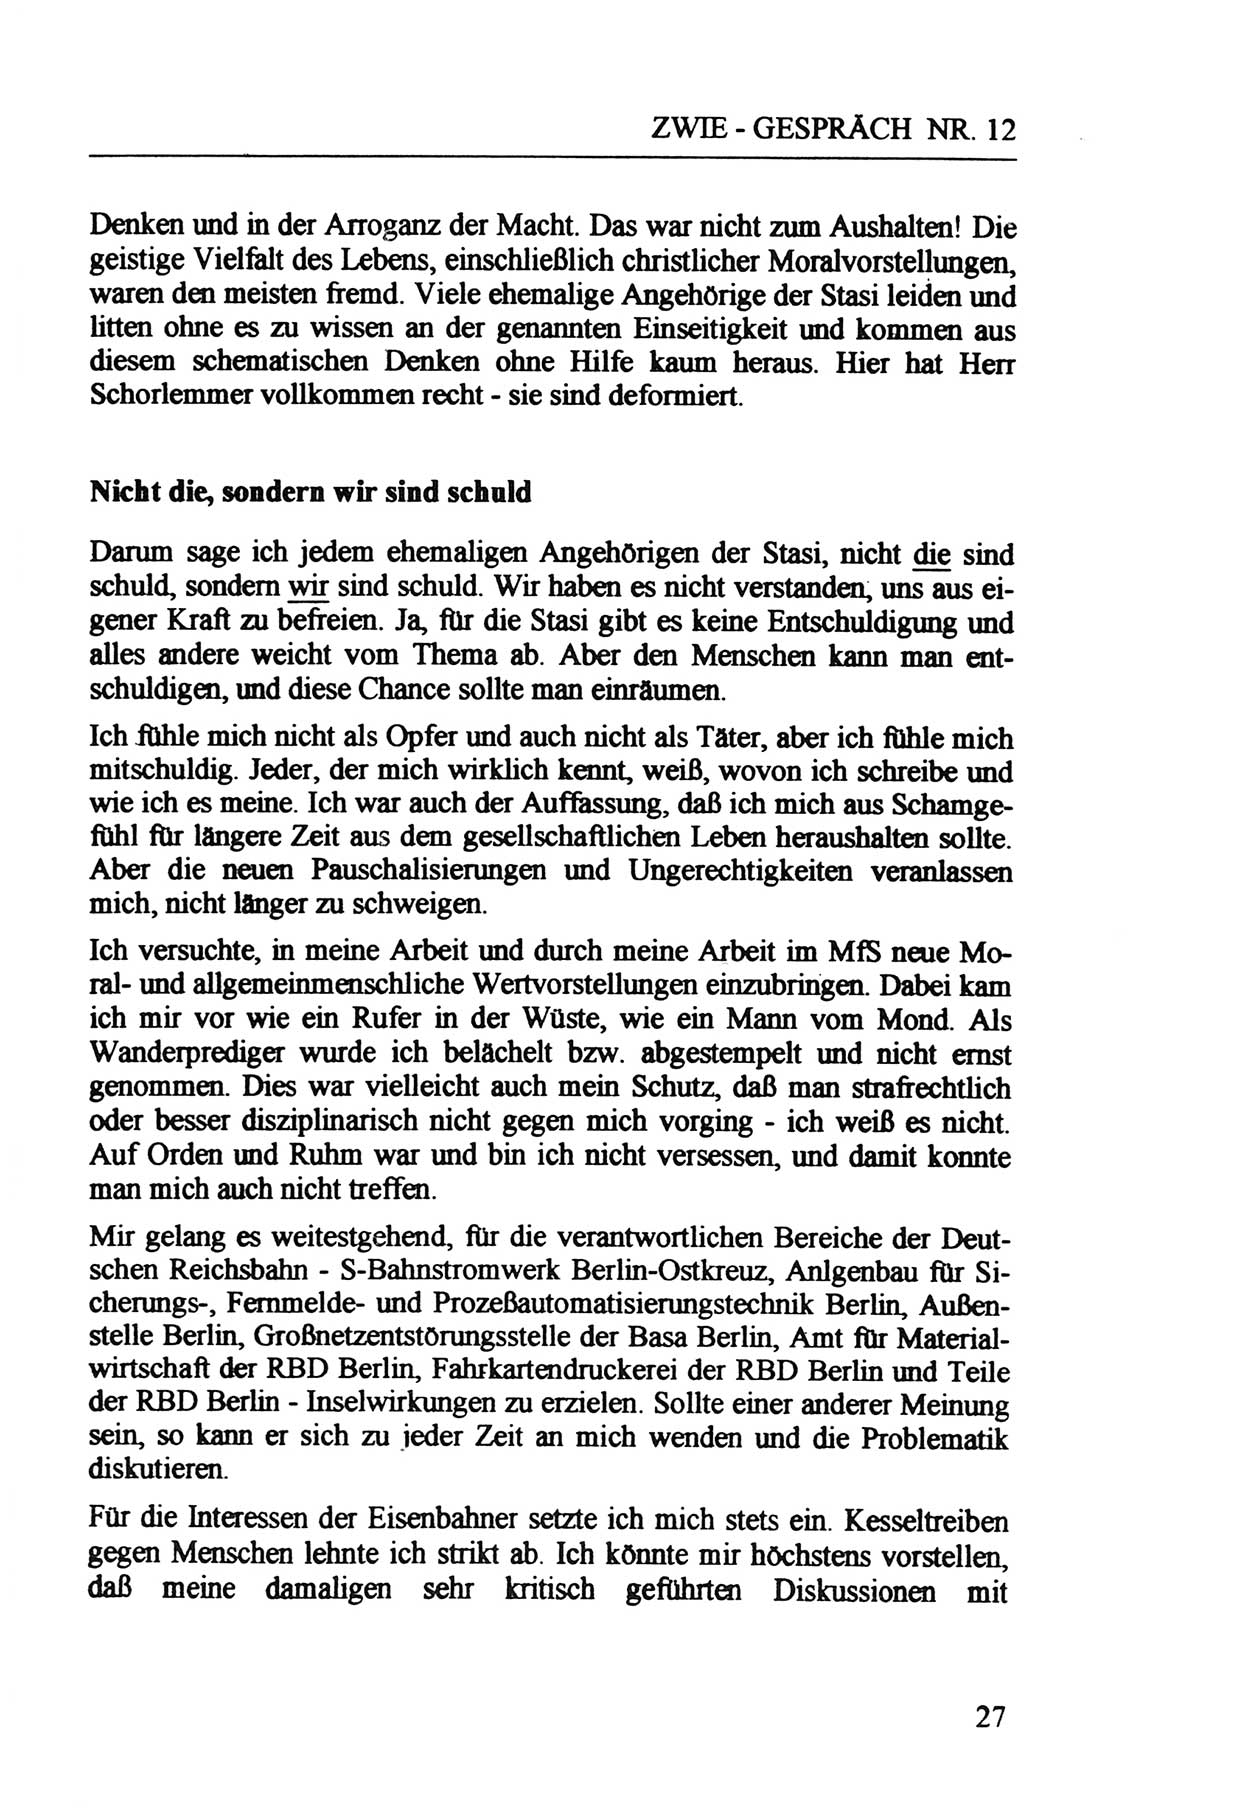 Zwie-Gespräch, Beiträge zur Aufarbeitung der Staatssicherheits-Vergangenheit [Deutsche Demokratische Republik (DDR)], Ausgabe Nr. 12, Berlin 1993, Seite 27 (Zwie-Gespr. Ausg. 12 1993, S. 27)